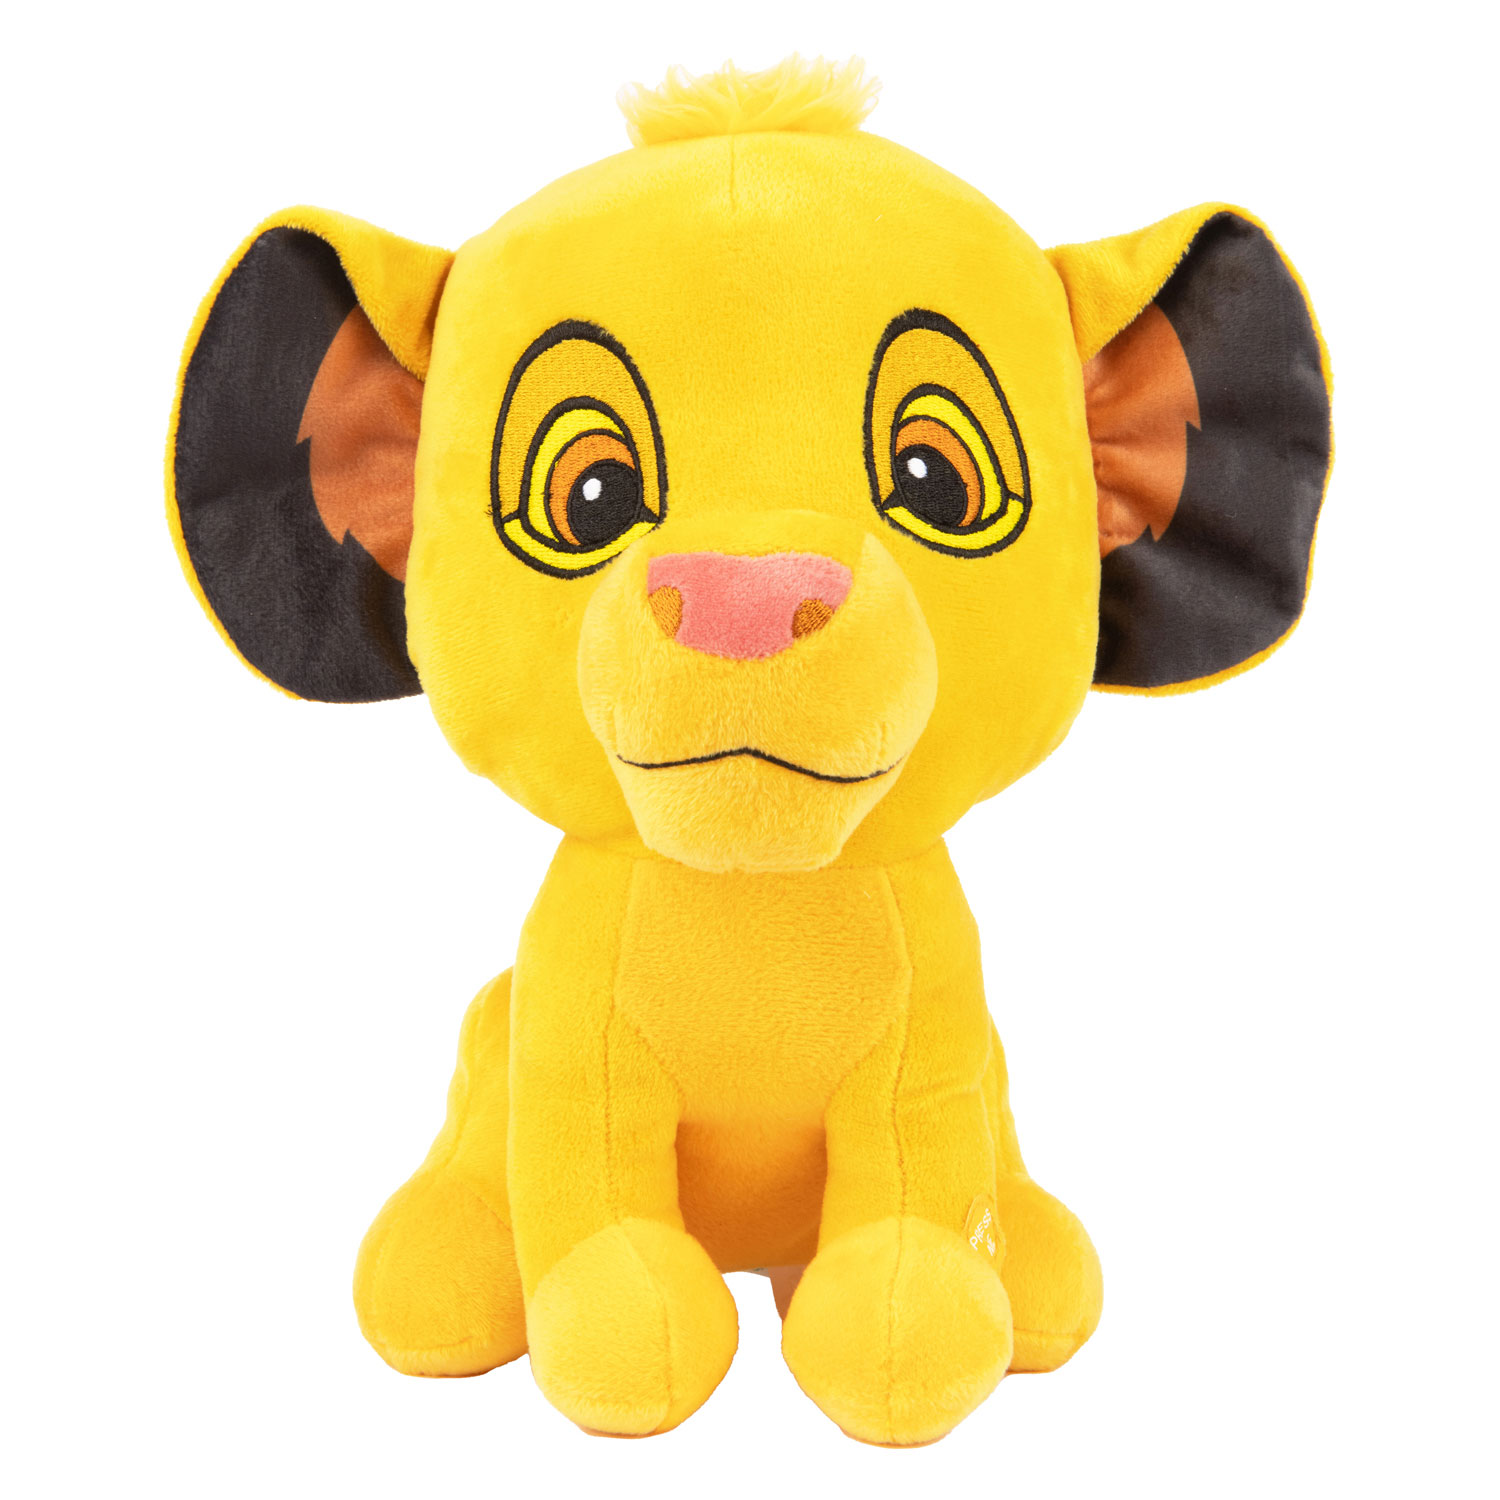 Acheter Peluche classique Disney avec son - Simba, 30 cm en